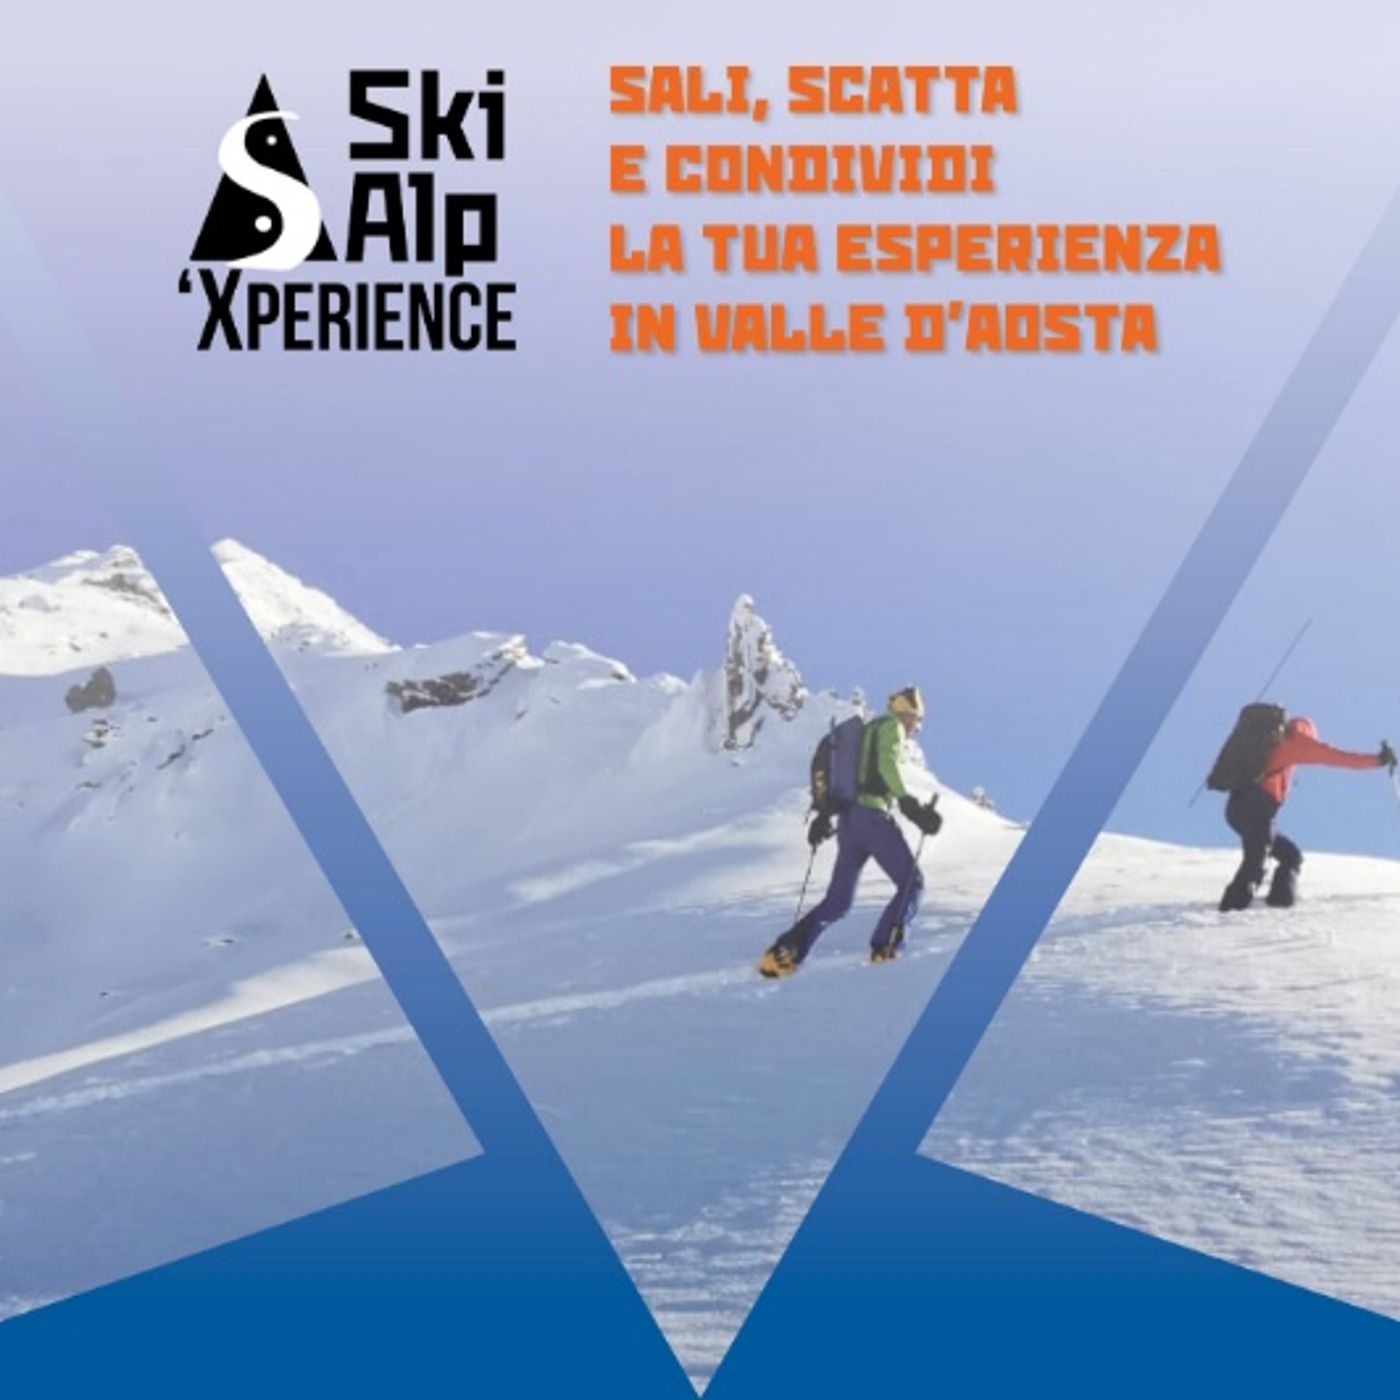 Ski Alp ‘Xperience, l’evento social per tutti gli appassionati di scialpinismo